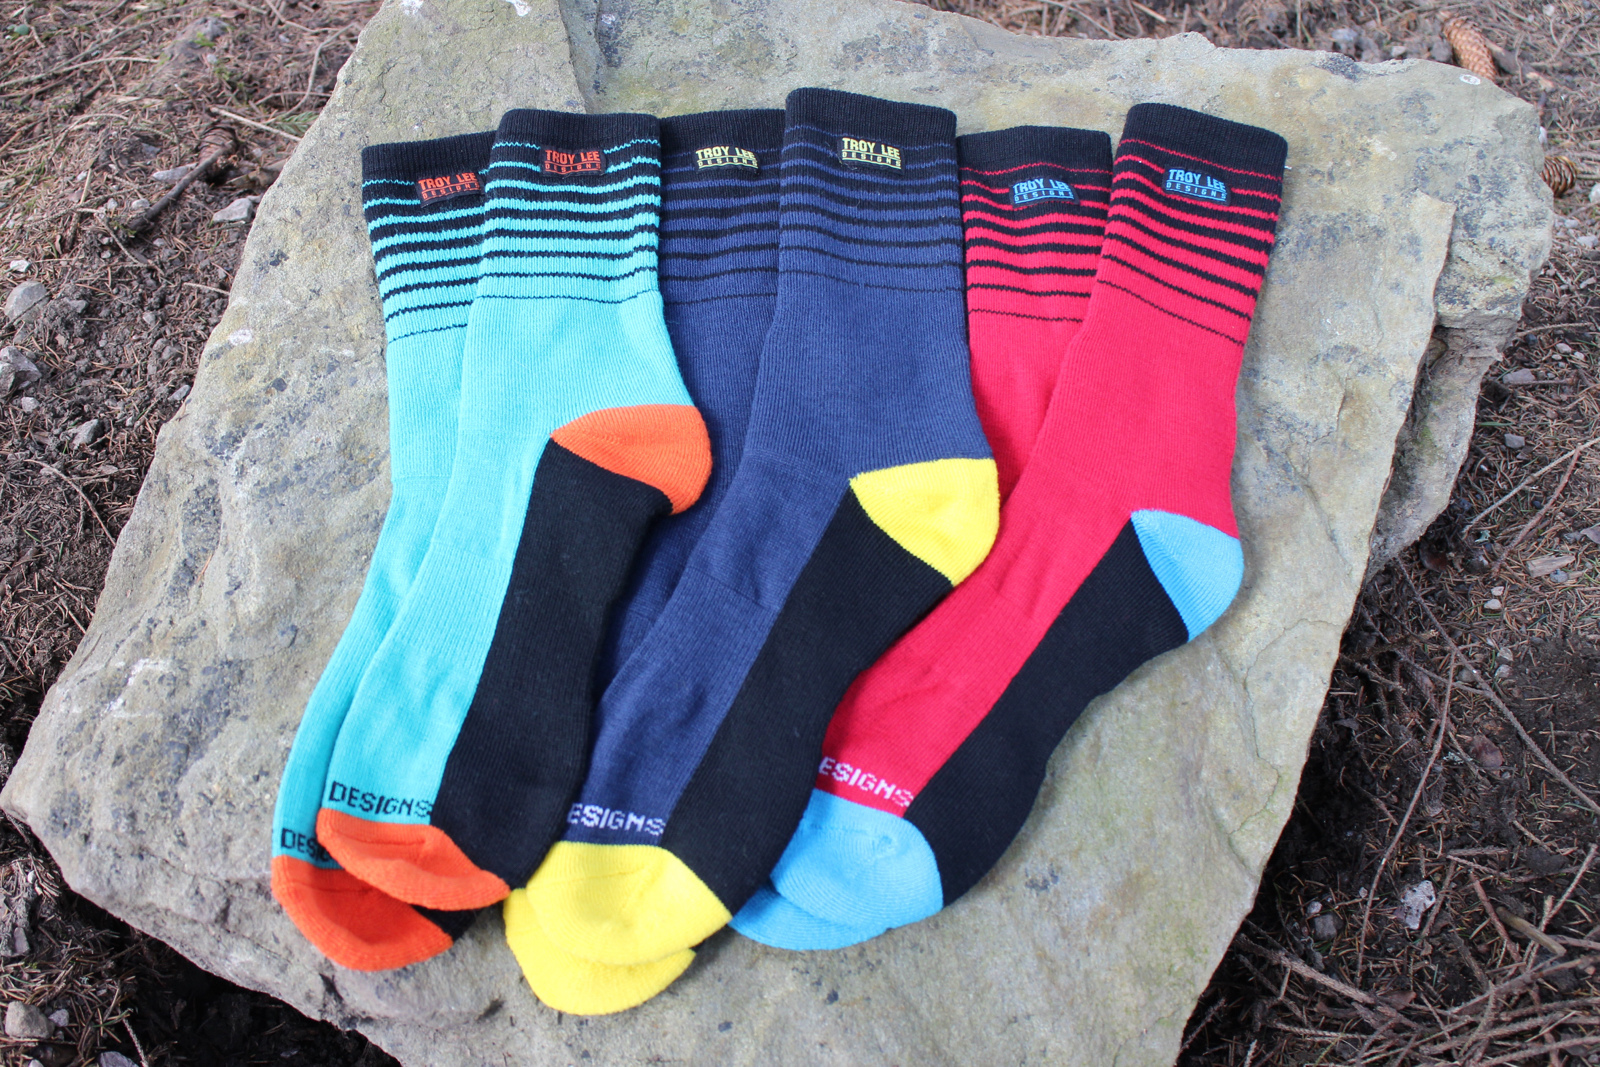 Troy Lee Designs socks